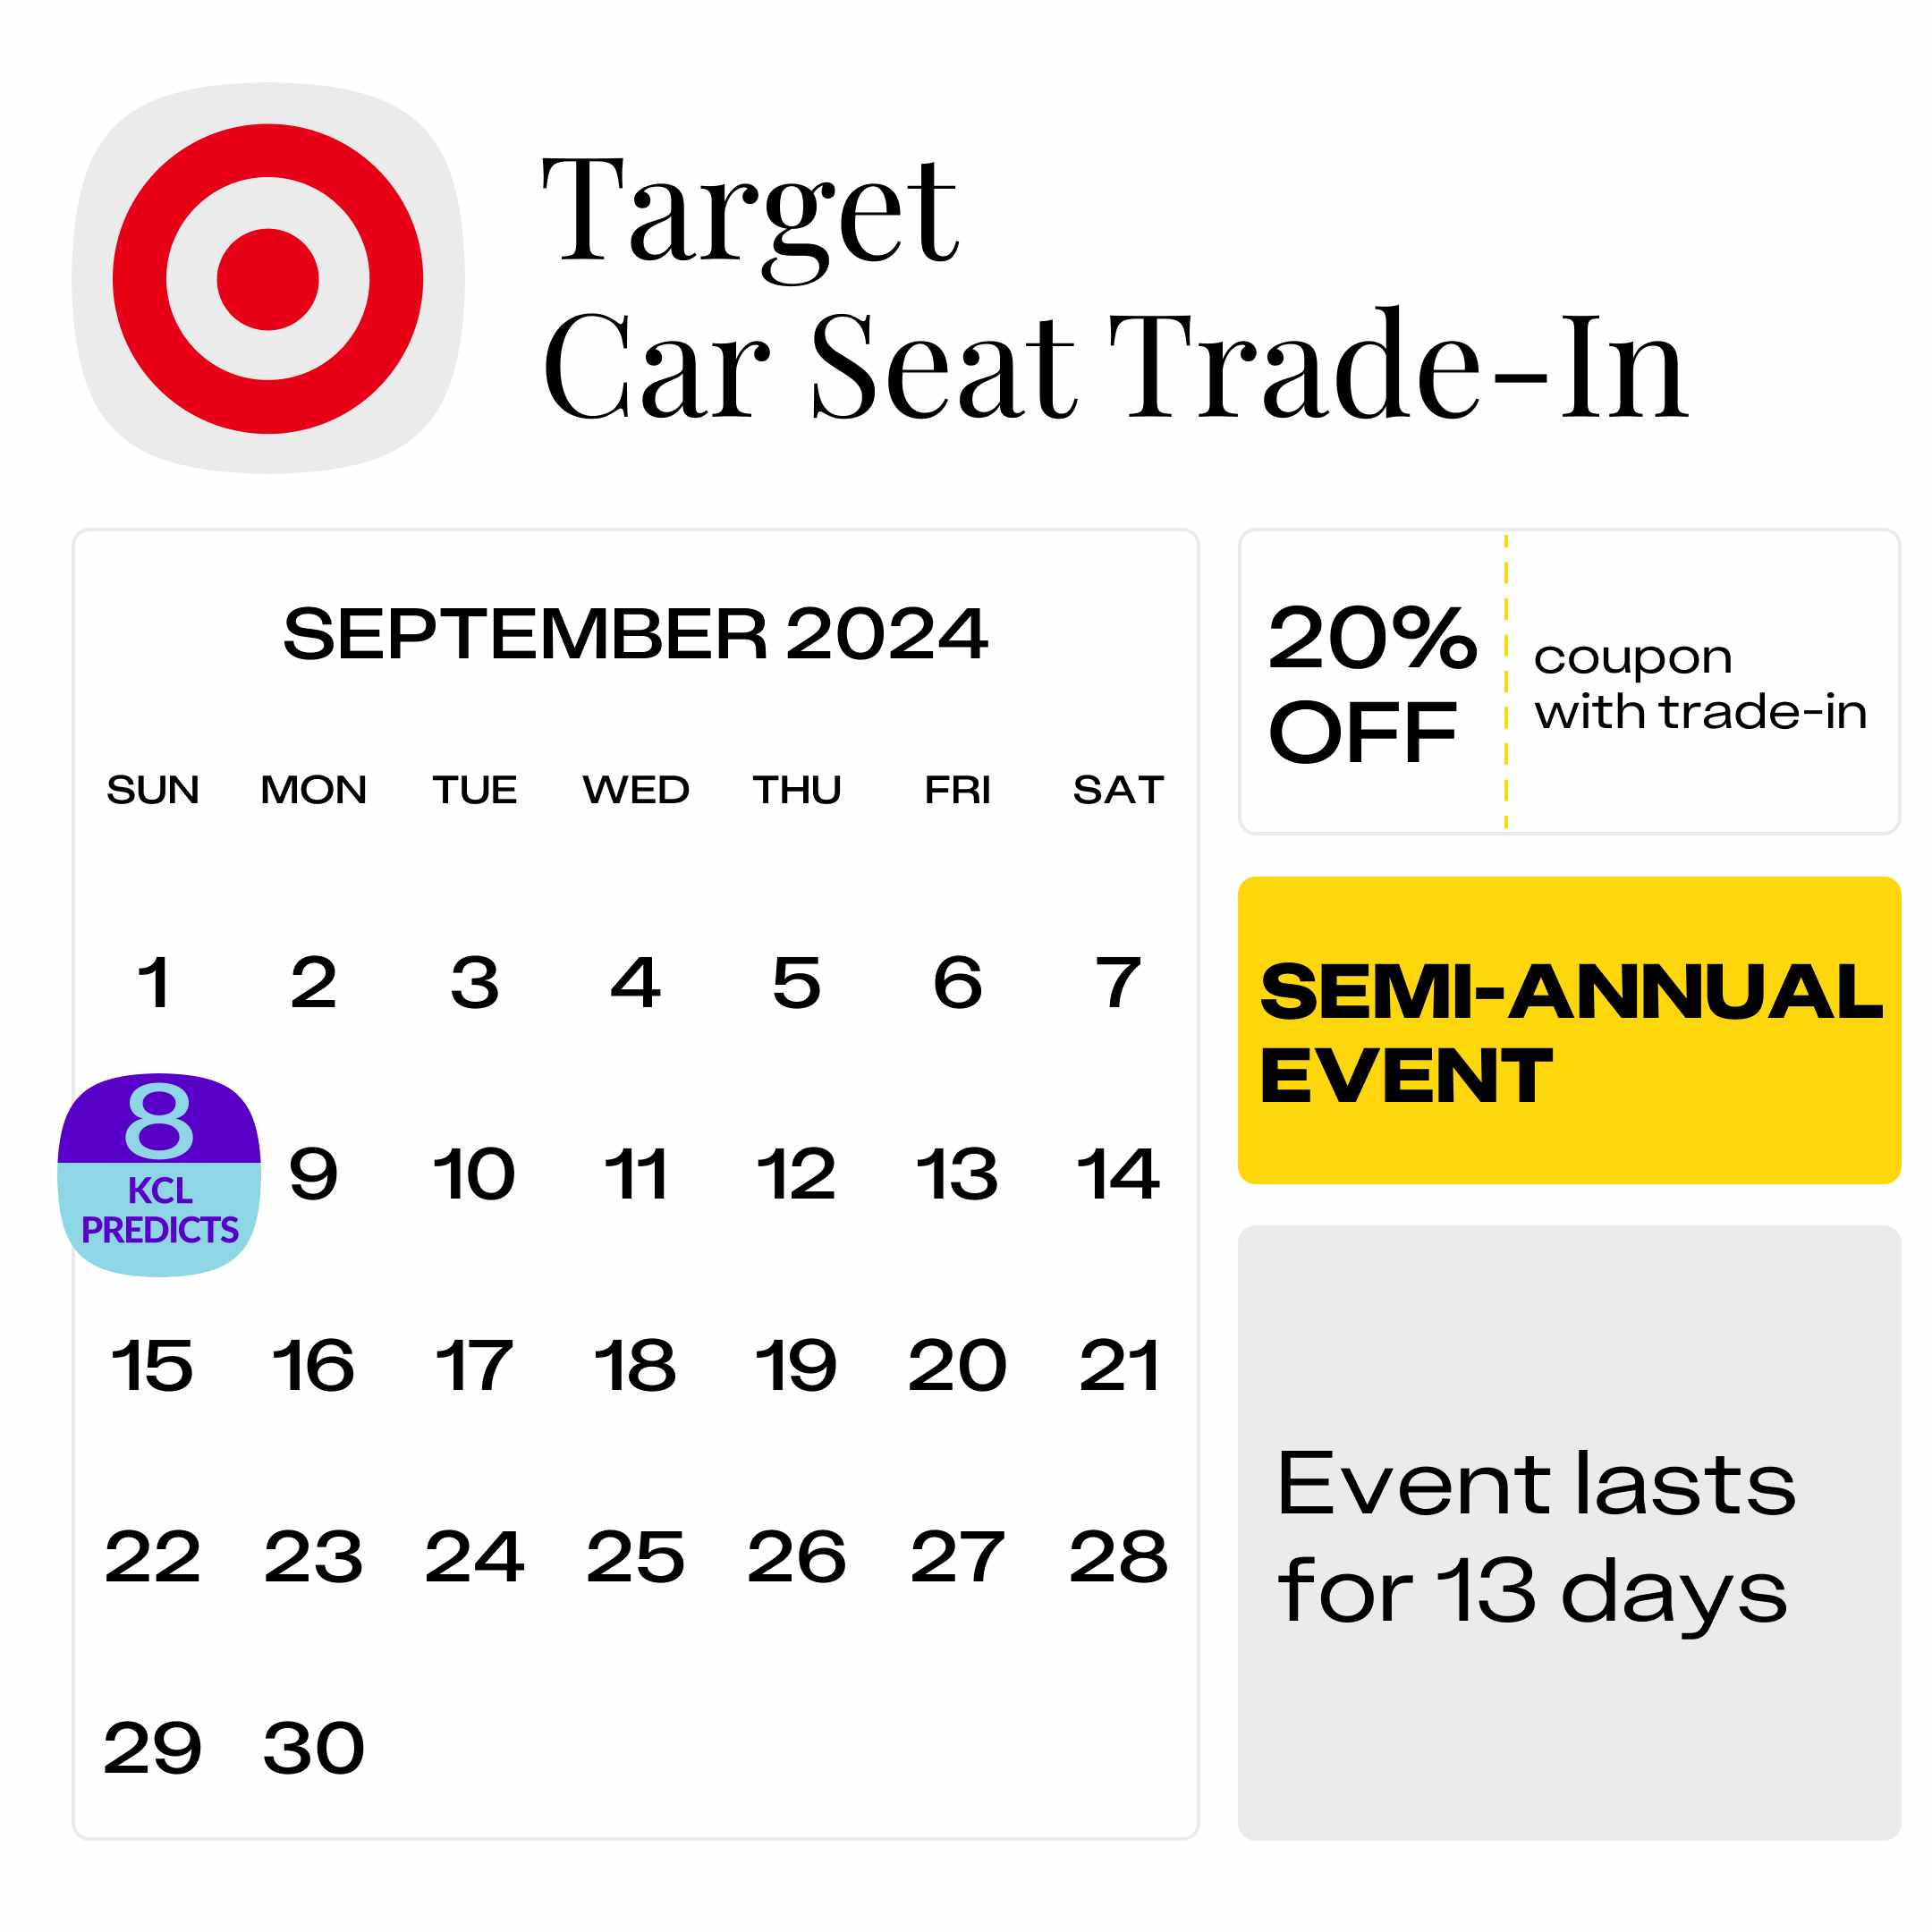 Target-Car-Seat-Trade-In-1